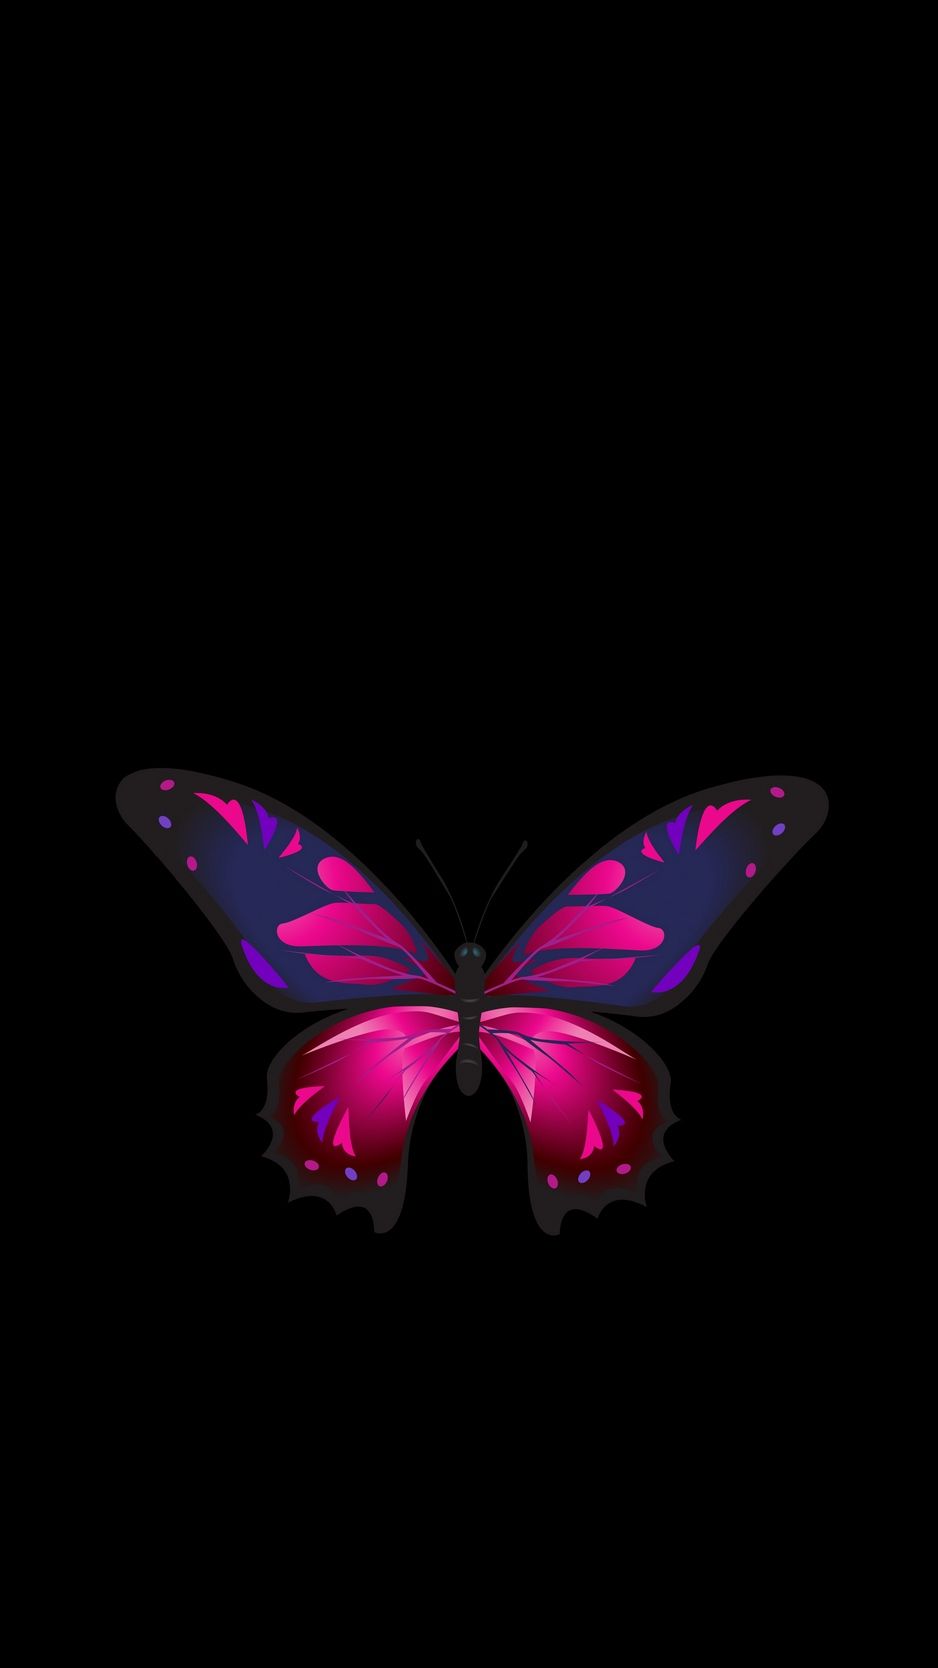 Butterfly, patterns, wings, dark background wallpaper